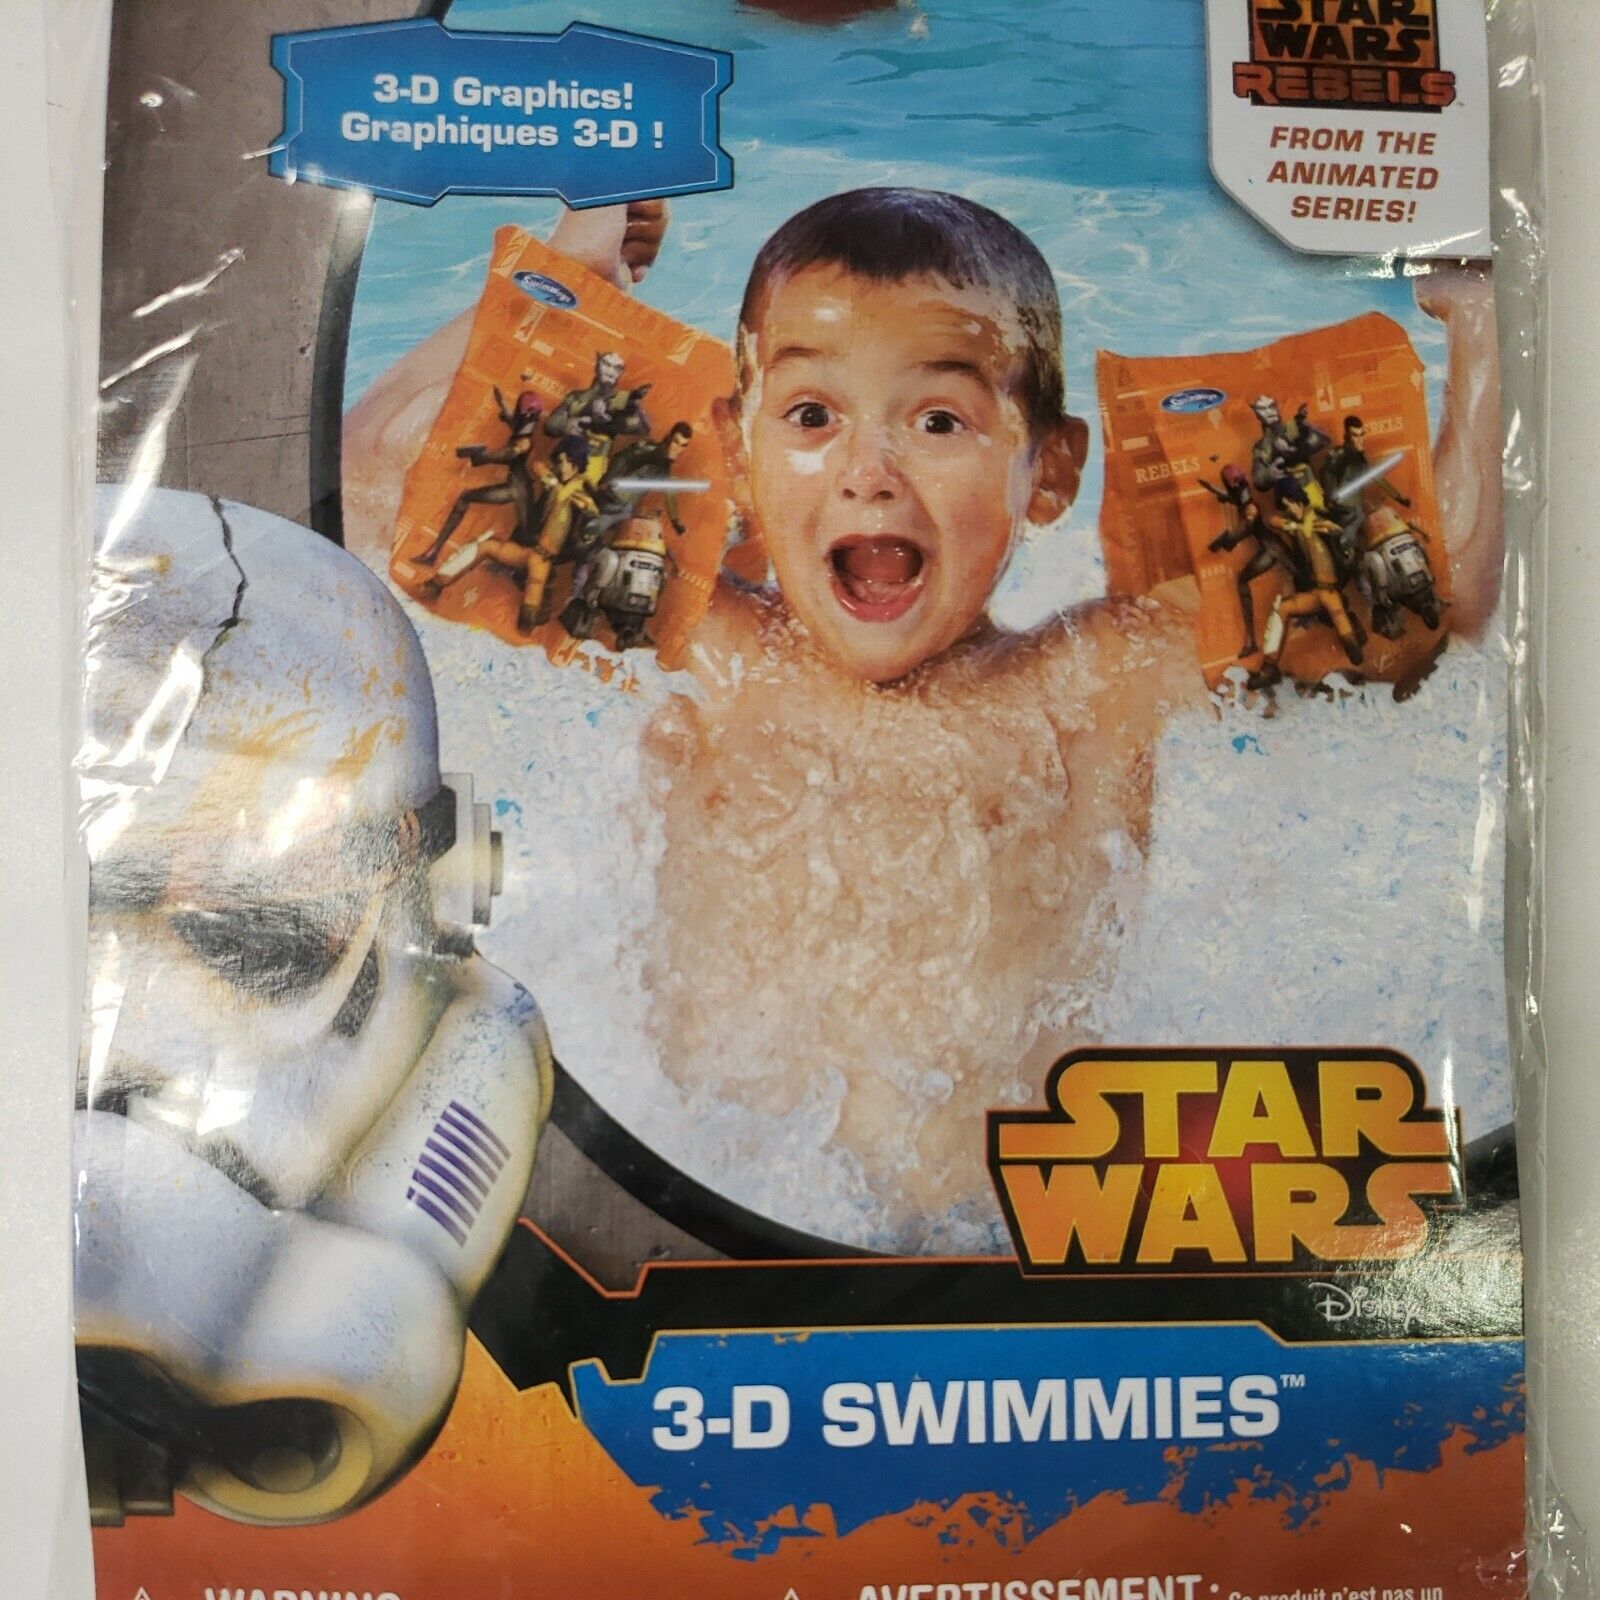 Star Wars Rebels 3-D Swimmies Arm Inflatable Floaties SwimWays Pool Summer Beach